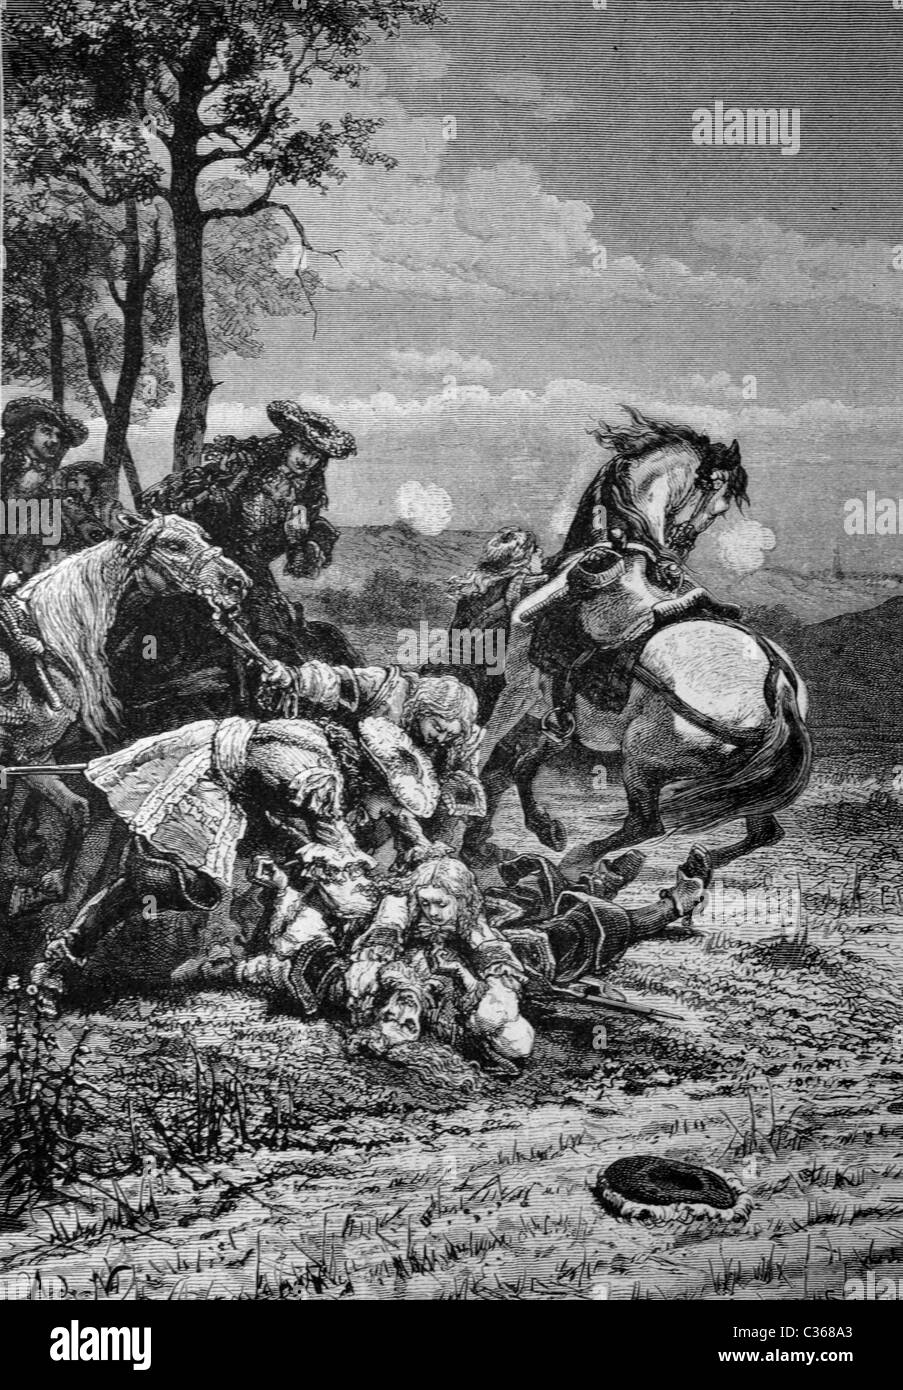 Muertos del mariscal Turenne en Sasbach, 27.7.1675, ilustración histórica Foto de stock